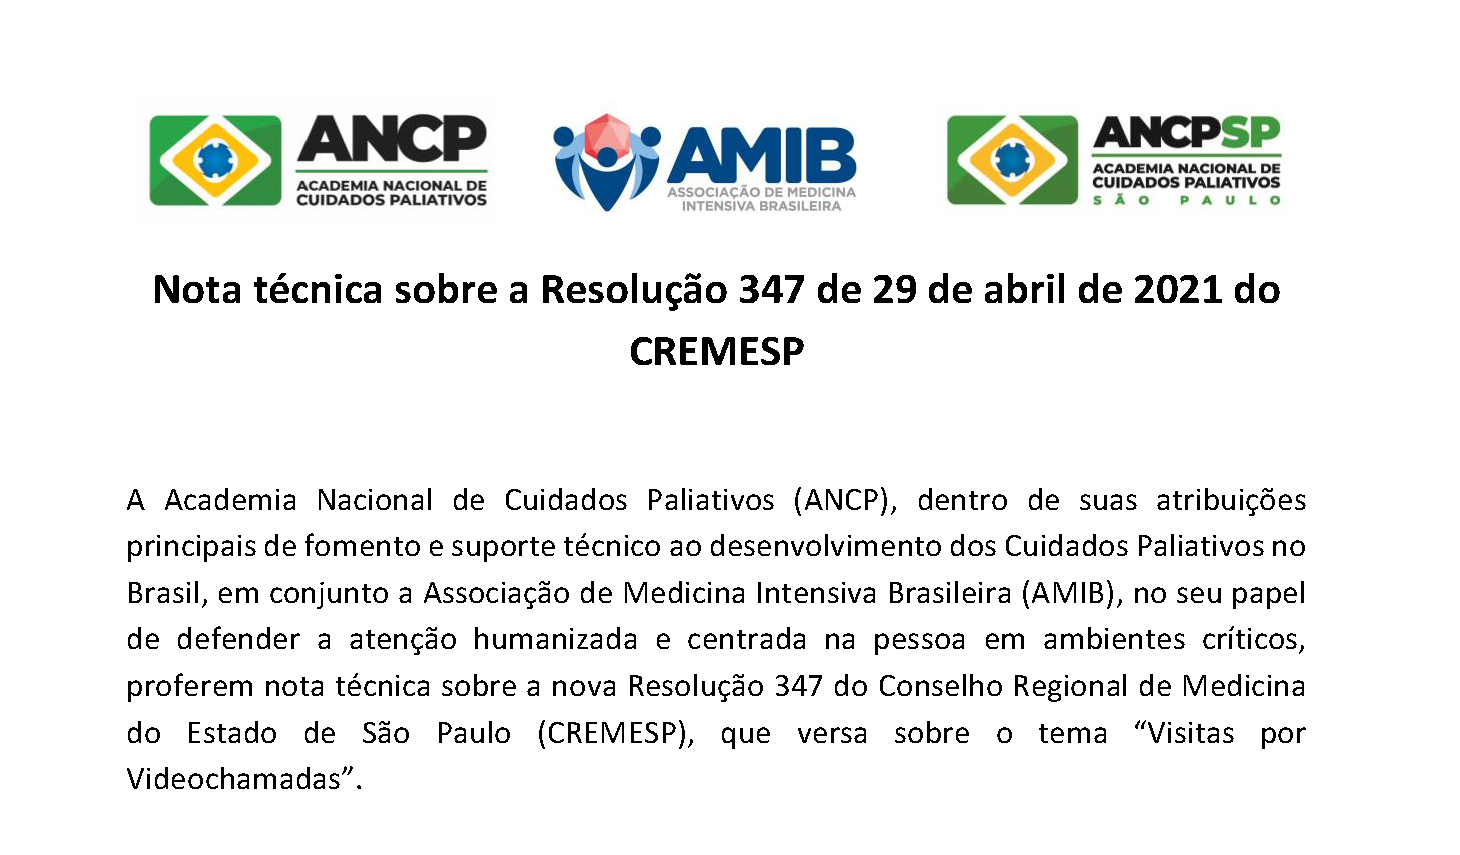 ANCP e AMIB publicam em parceria nota técnica sobre a resolução do CREMESP voltada a respeitar a decisão do paciente sobre o uso de videochamada